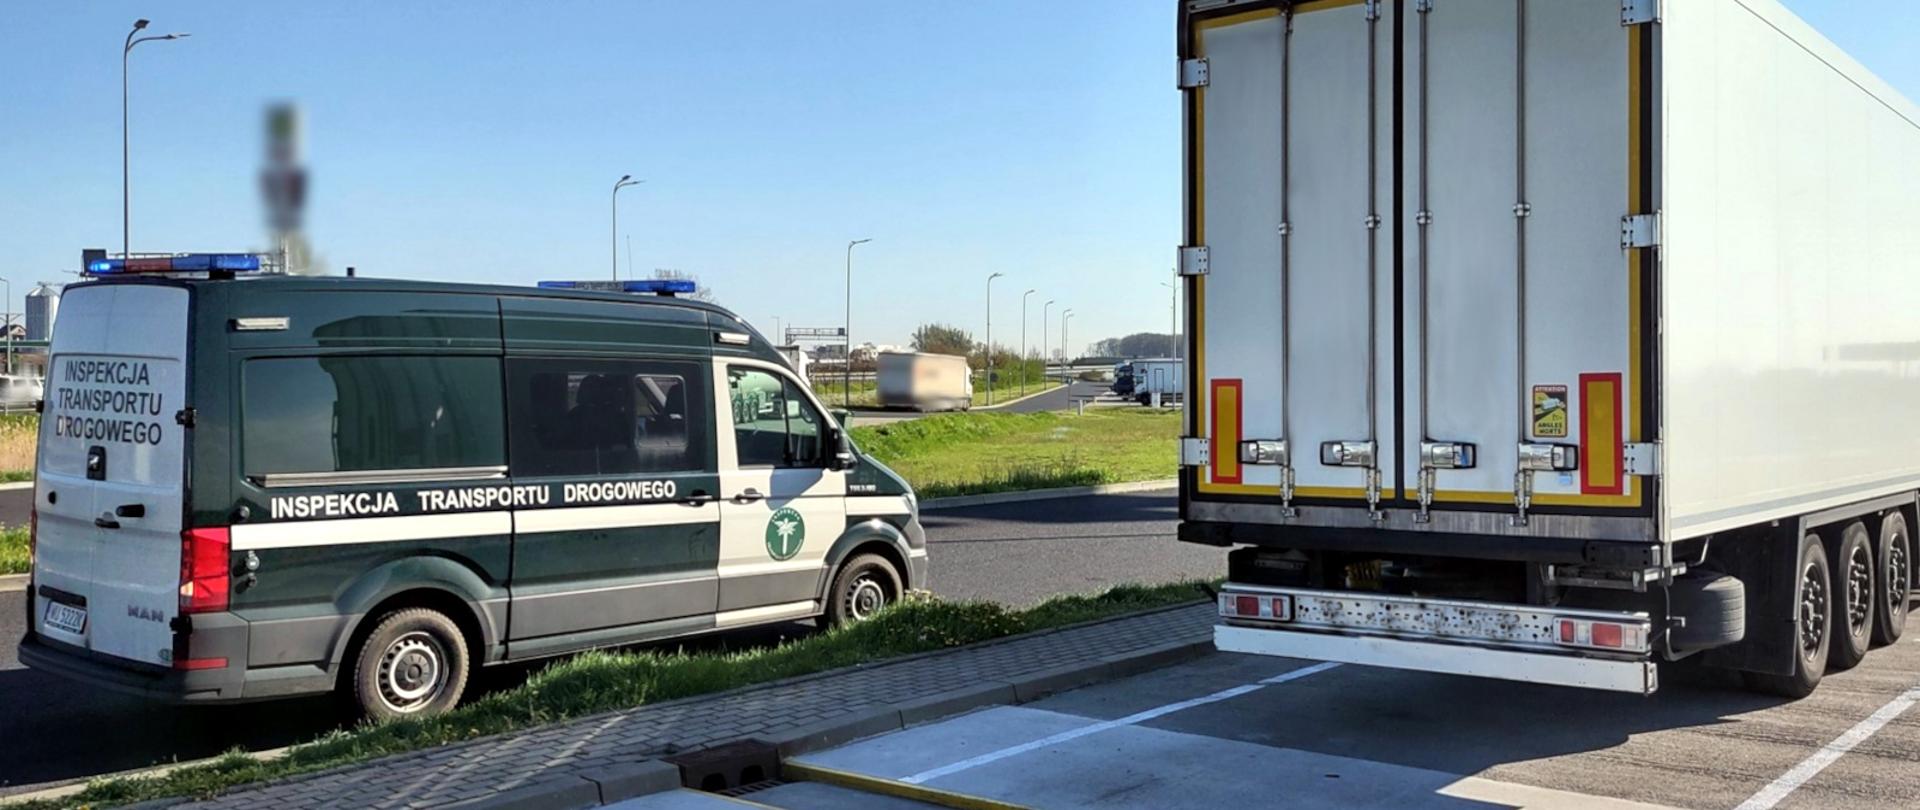 Ciężarówka zatrzymana przez inspektorów wielkopolskiej Inspekcji Transportu Drogowego
